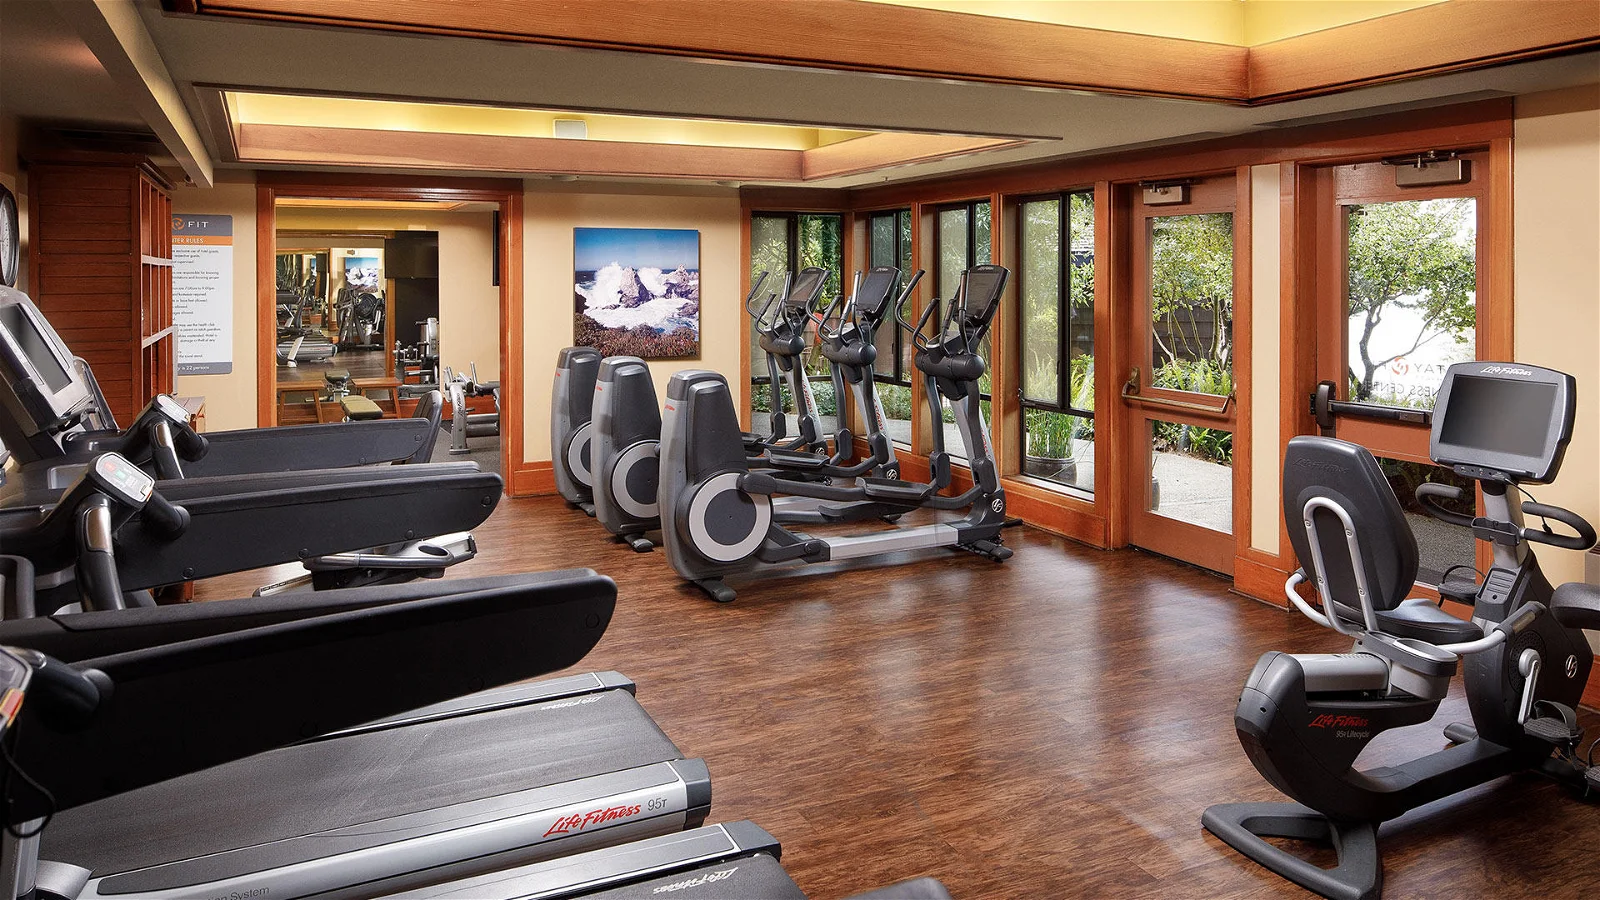 Hyatt Highlands Inn Fitness Center